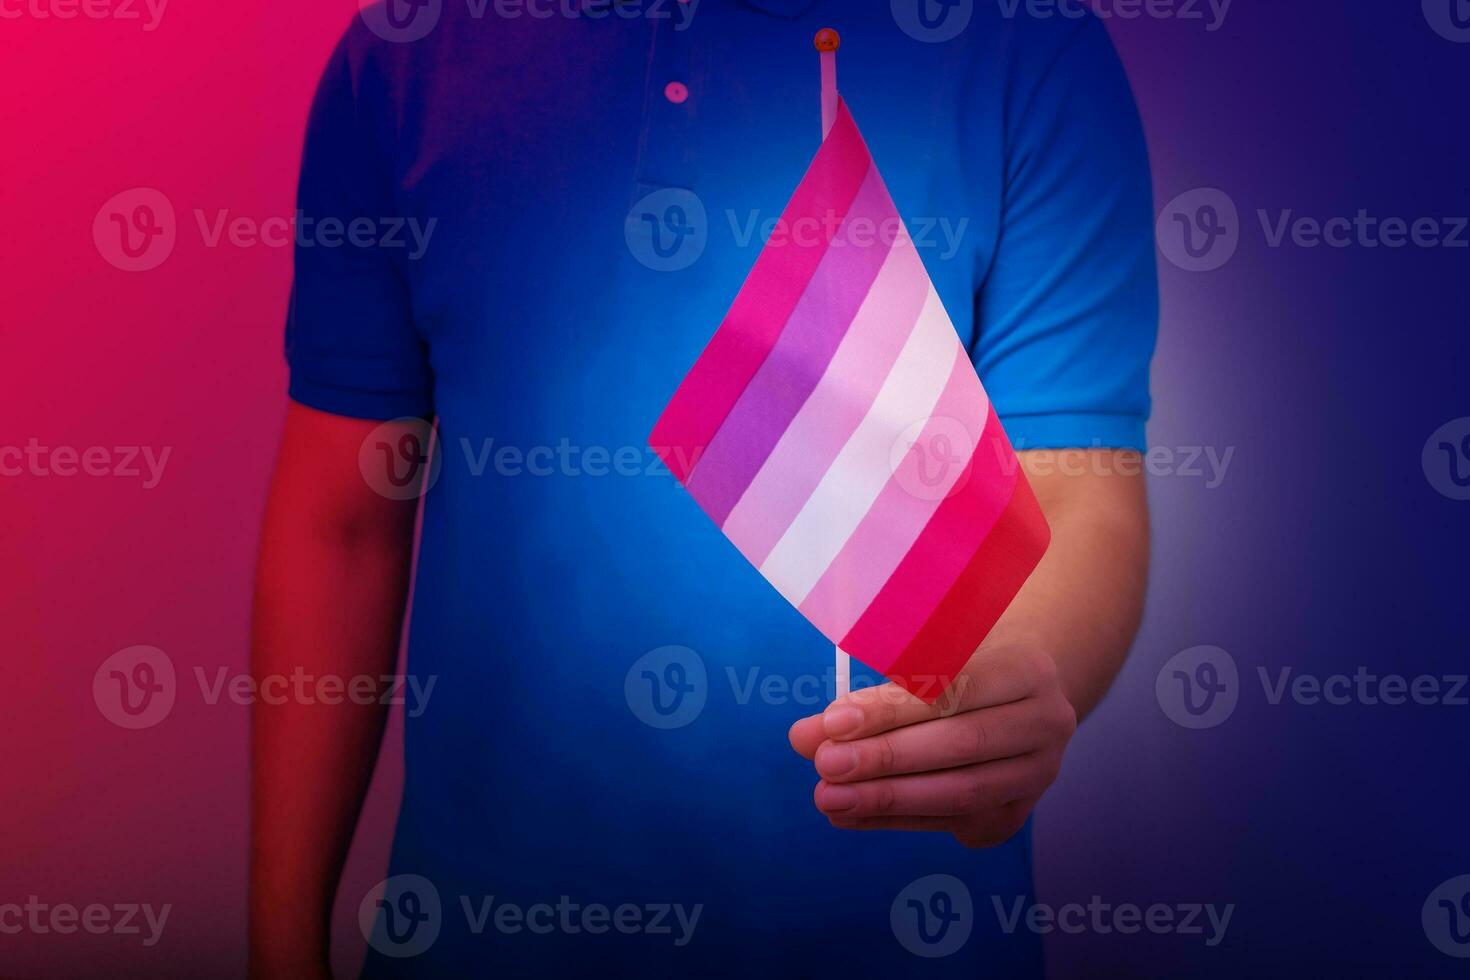 mano Tenere bandiera nel lesbica orgoglio colori. foto